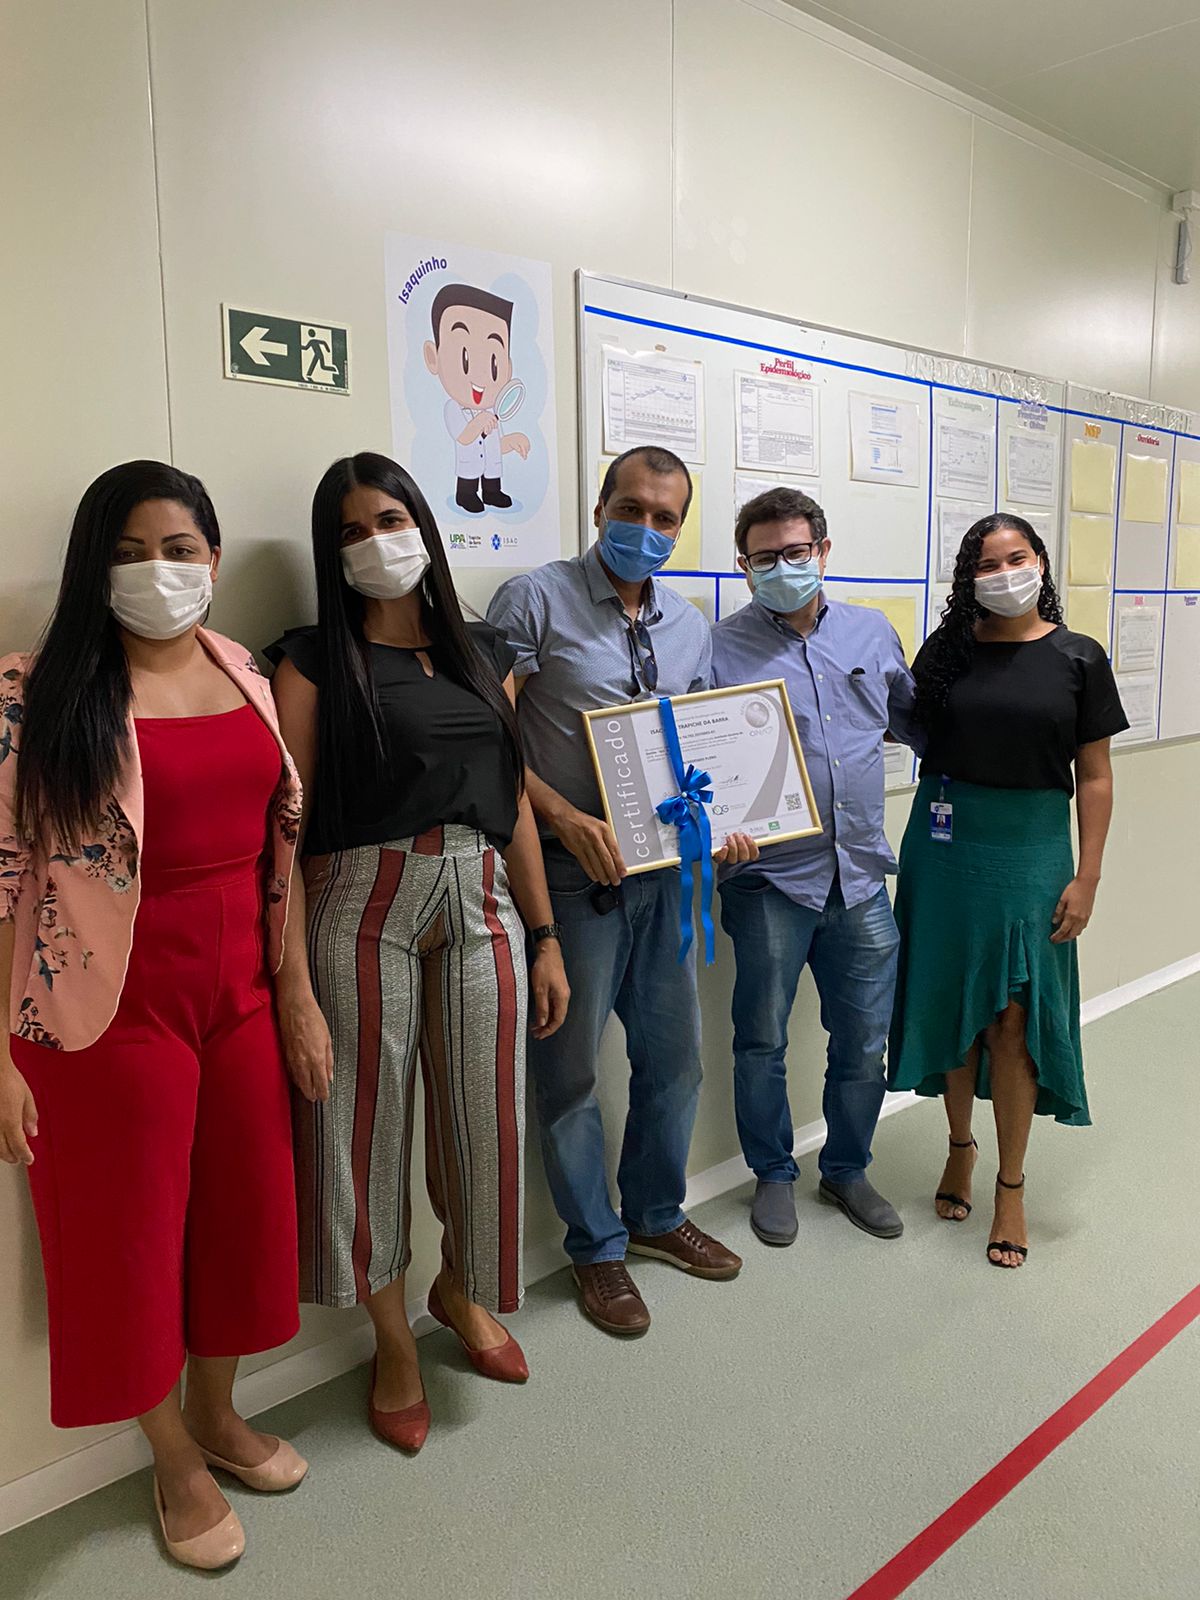 Cinco pessoas, todas de máscara, estão de pé em um corredor hospitalar, um ao lado do outro. A pessoa que está no meio, segura uma placa com um laço azul.